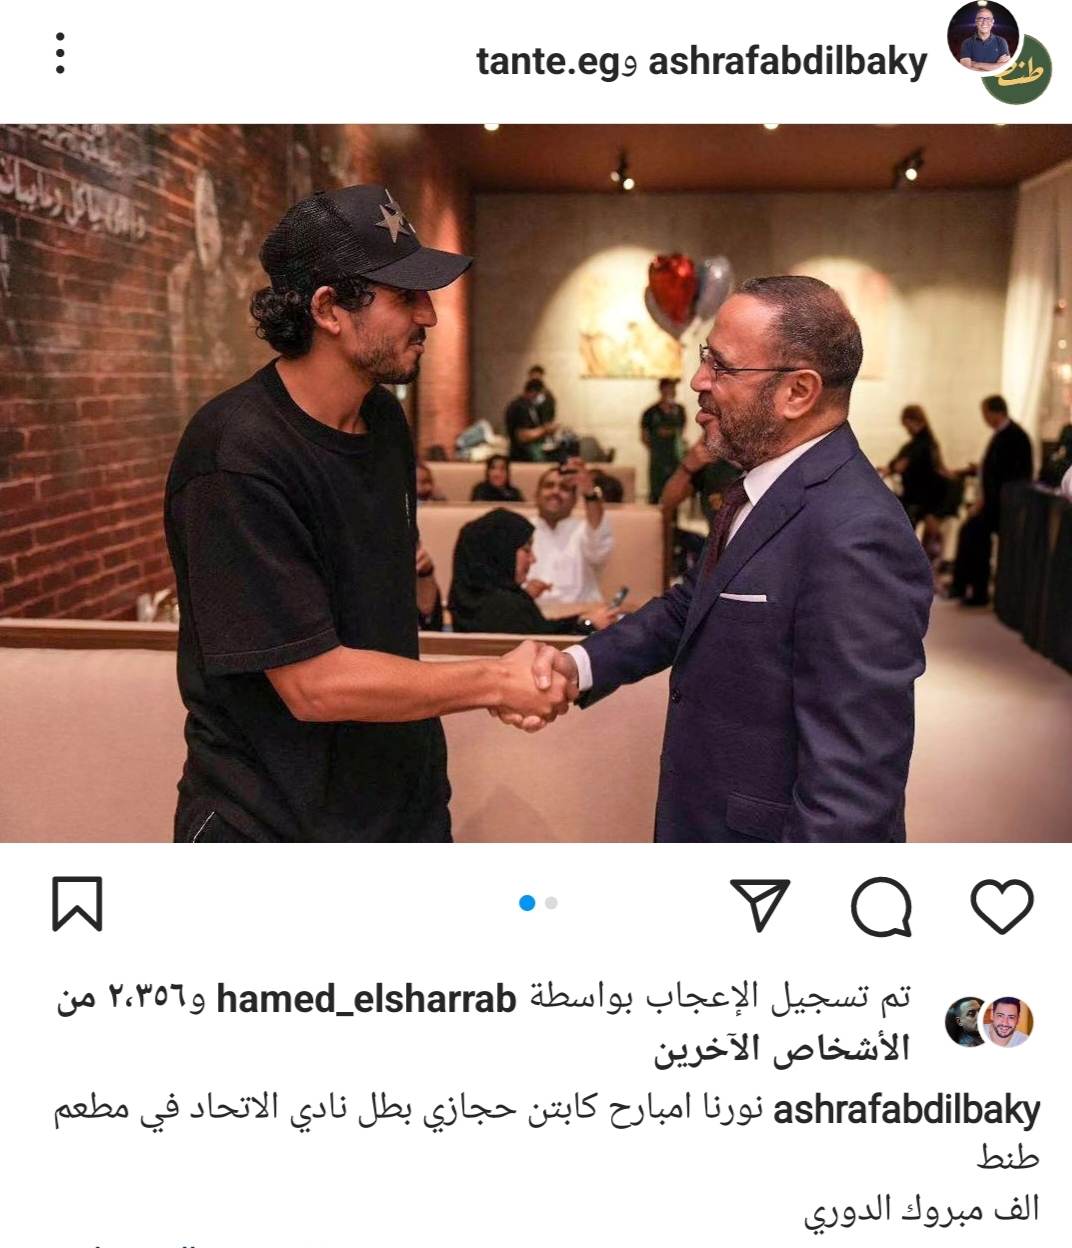  أشرف عبدالباقي يستضيف أحمد حجازي في مطعمه